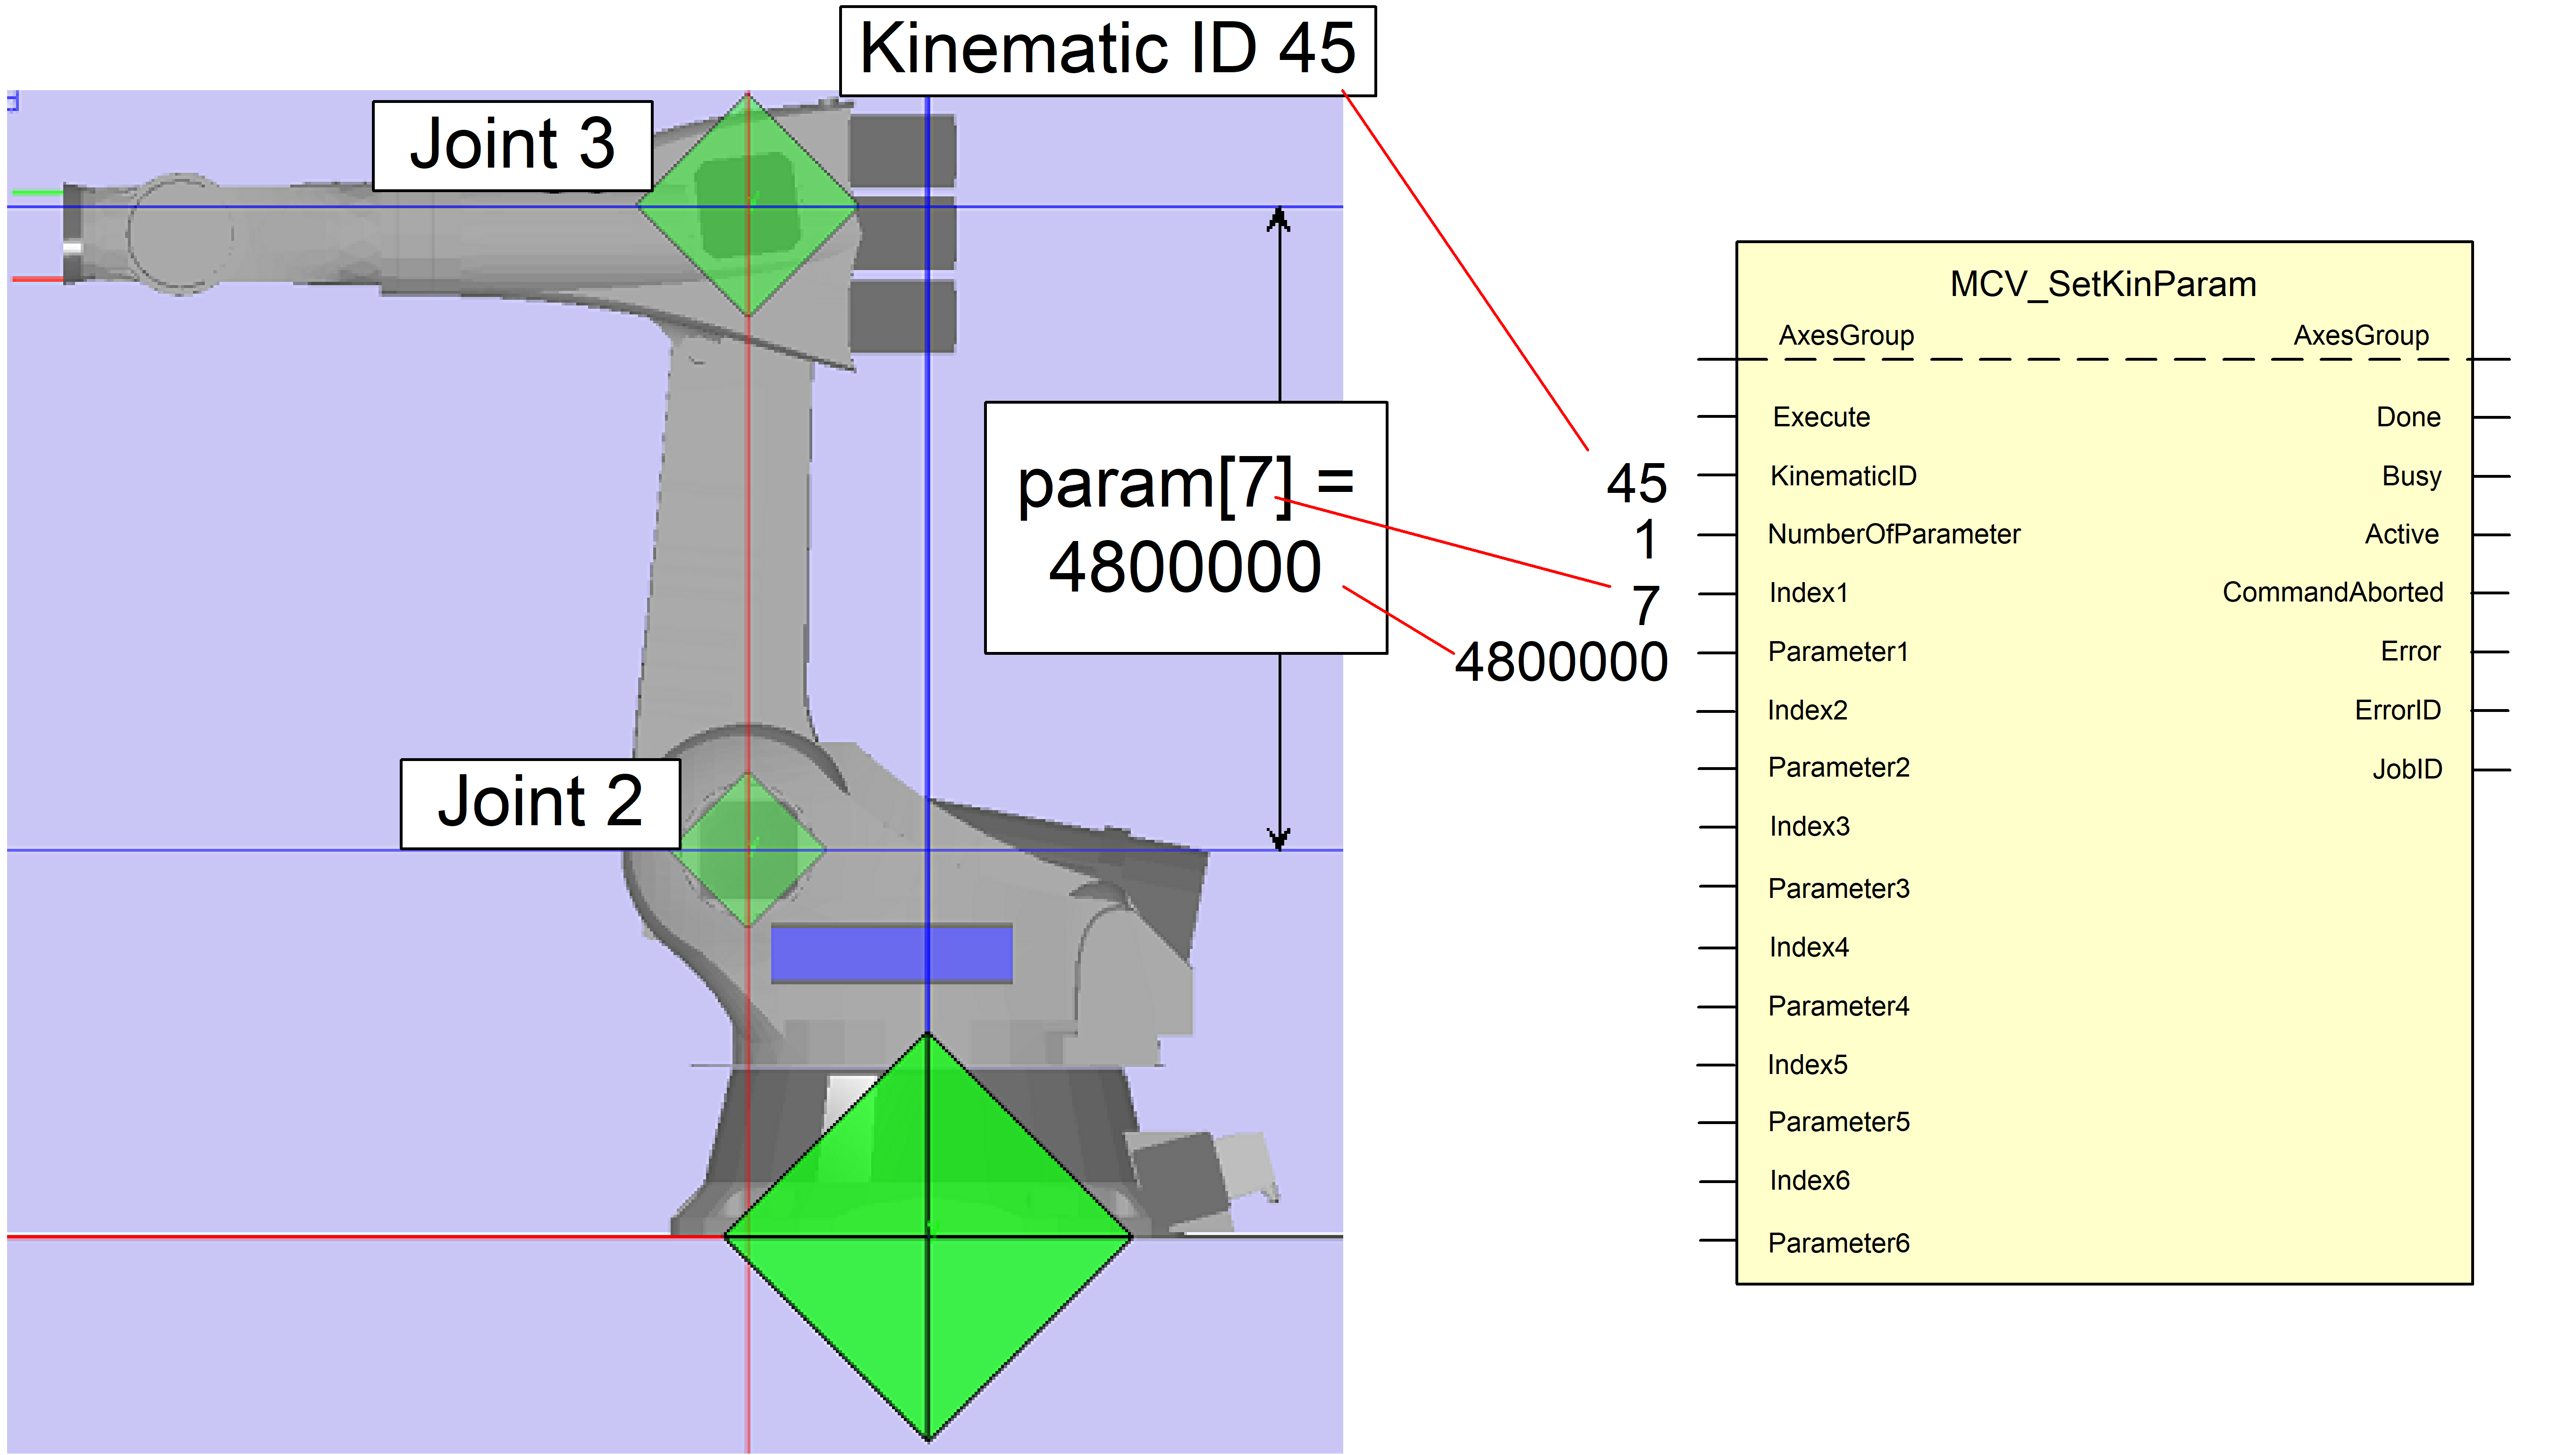 Gelenkarmroboter kinematische Transformation ID=45